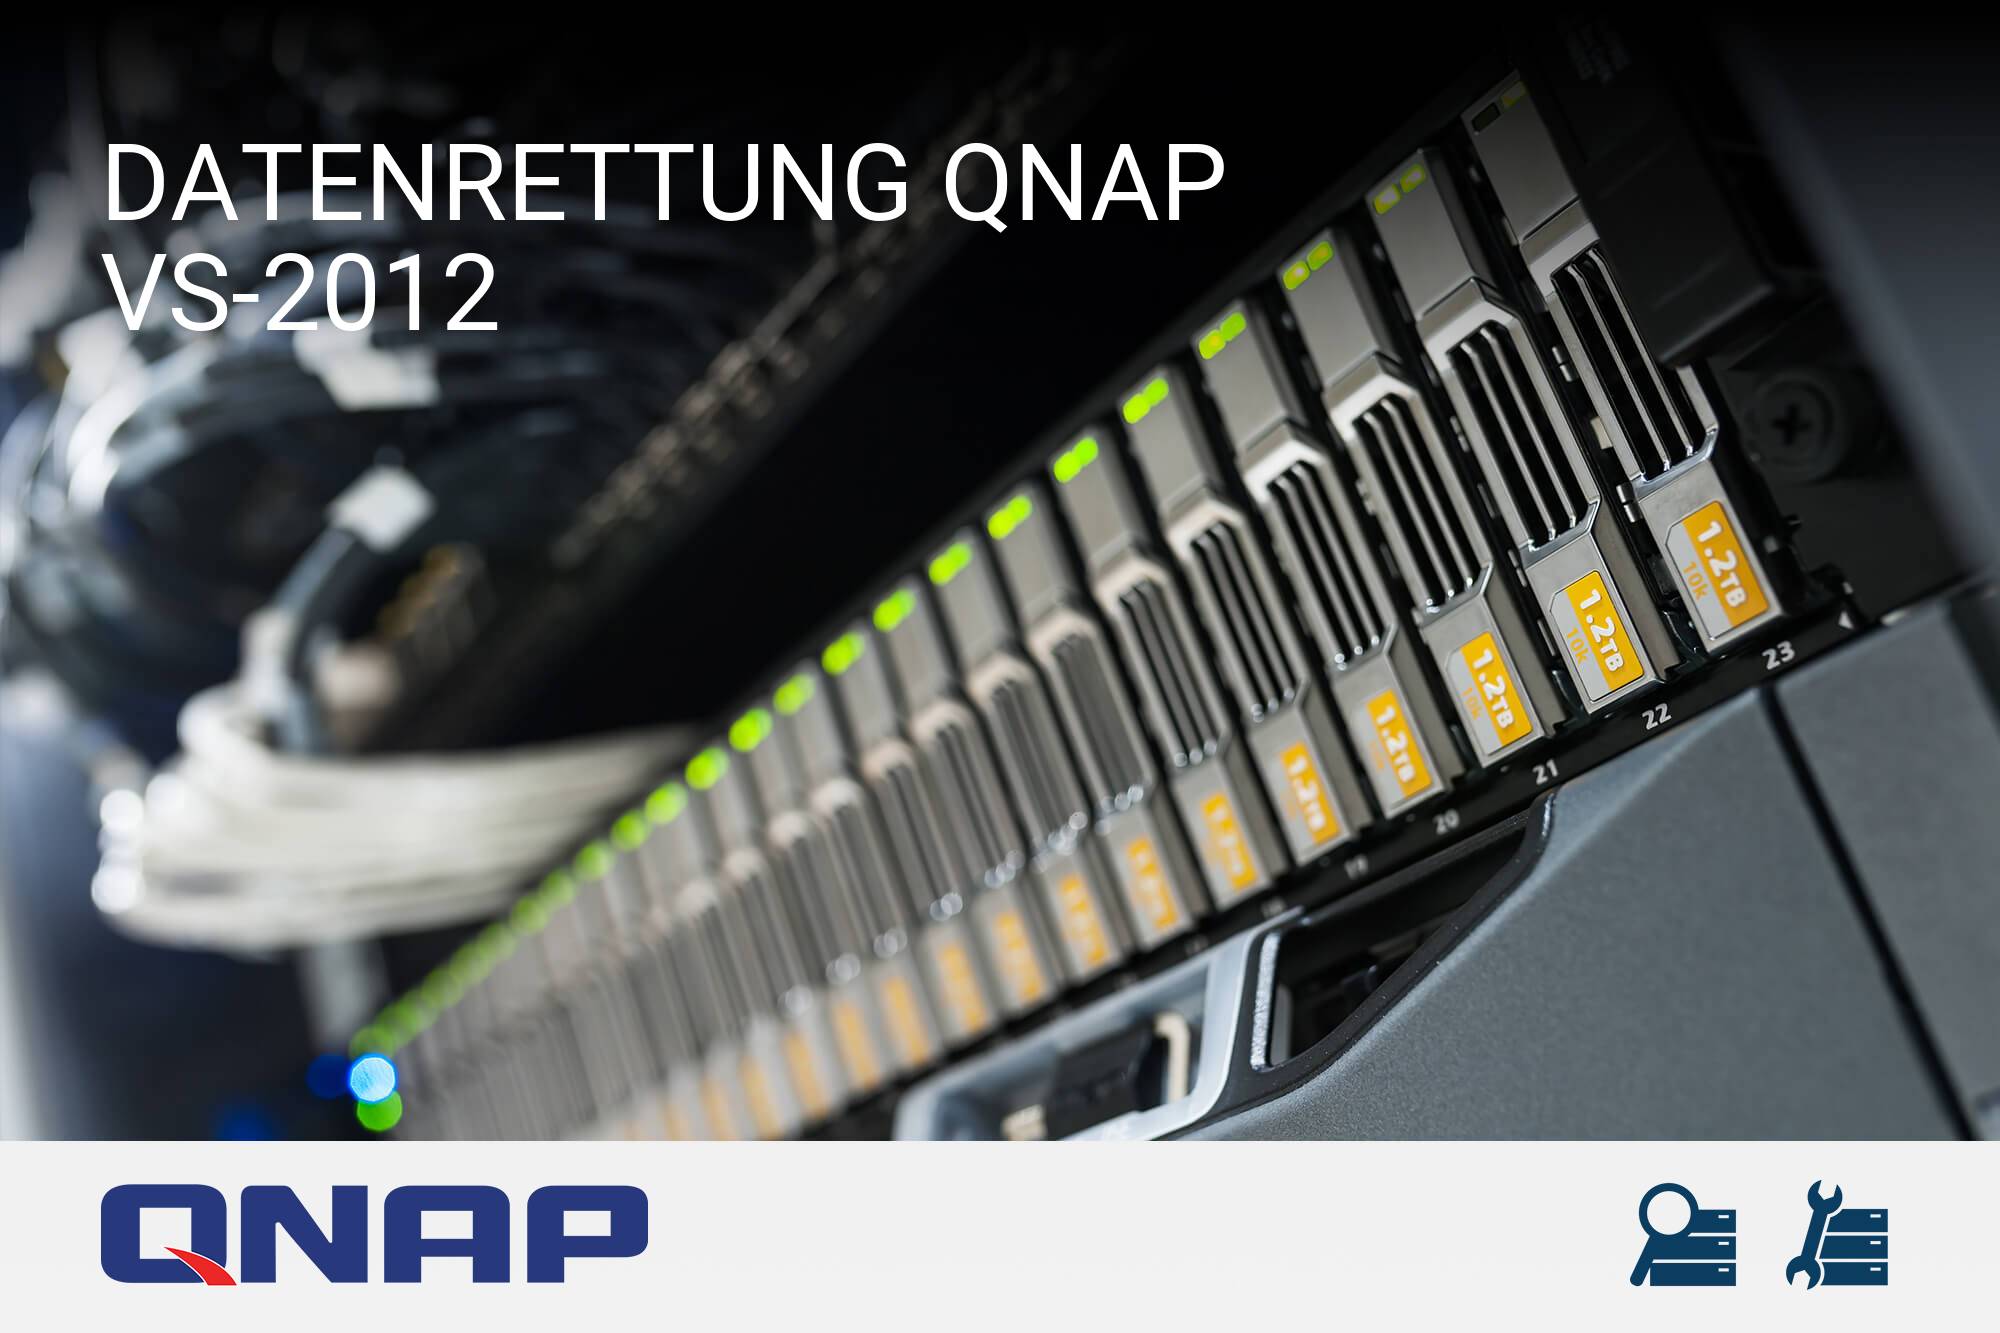 QNAP VS-2012